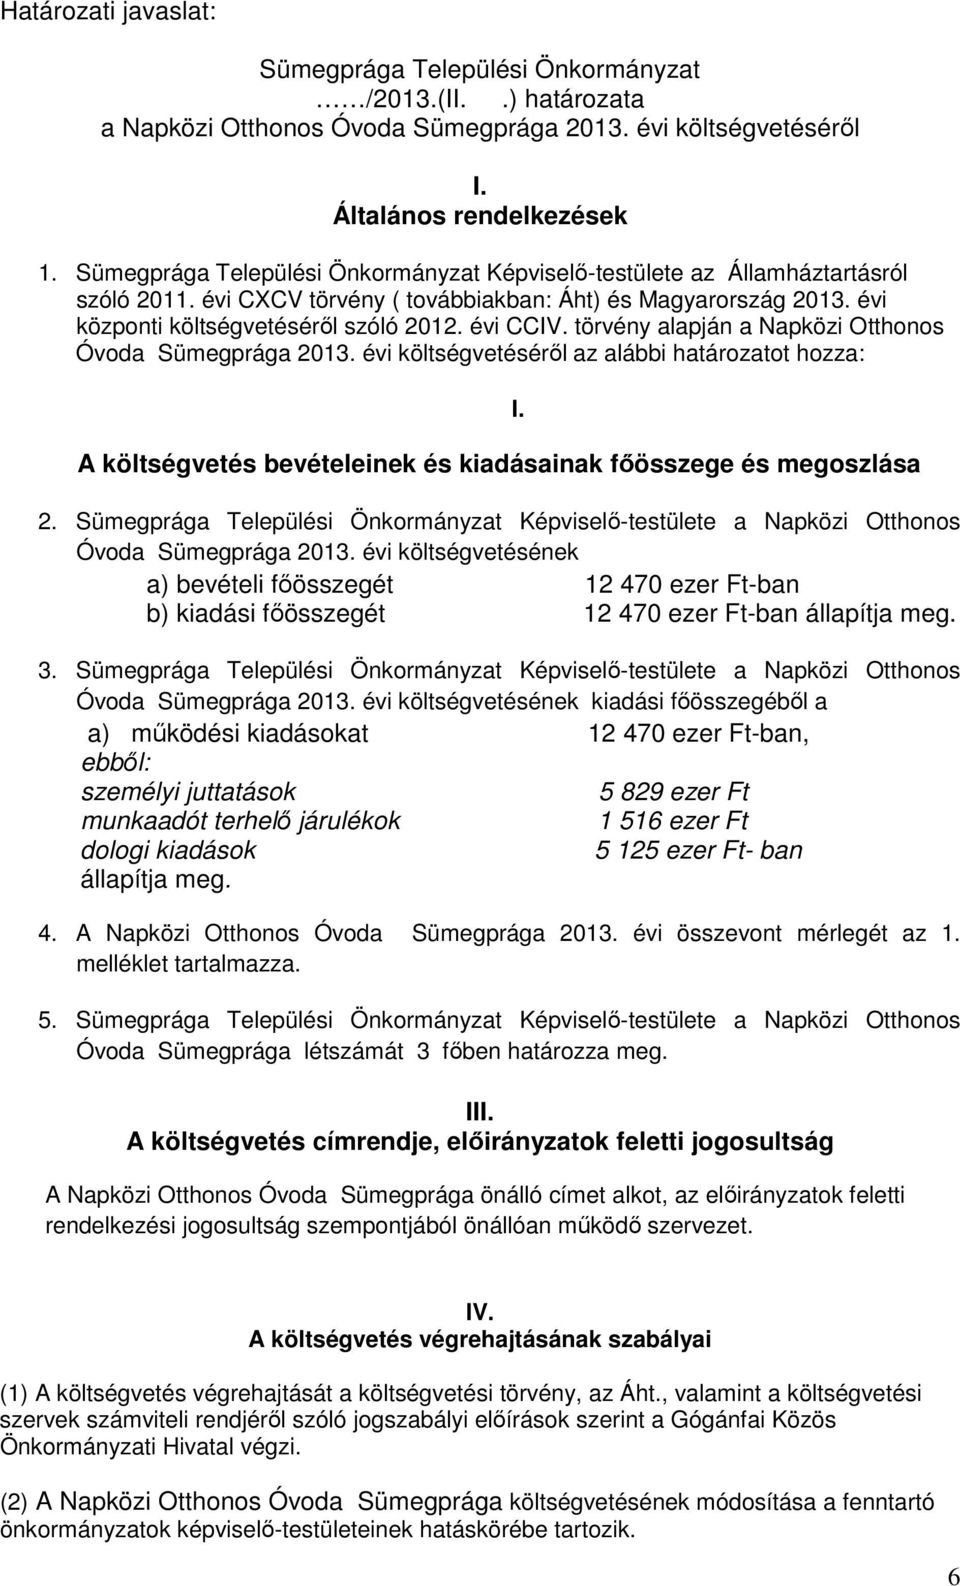 törvény alapján a Napközi Otthonos Óvoda Sümegprága 2013. évi költségvetéséről az alábbi határozatot hozza: A költségvetés bevételeinek és kiadásainak főösszege és megoszlása 2.